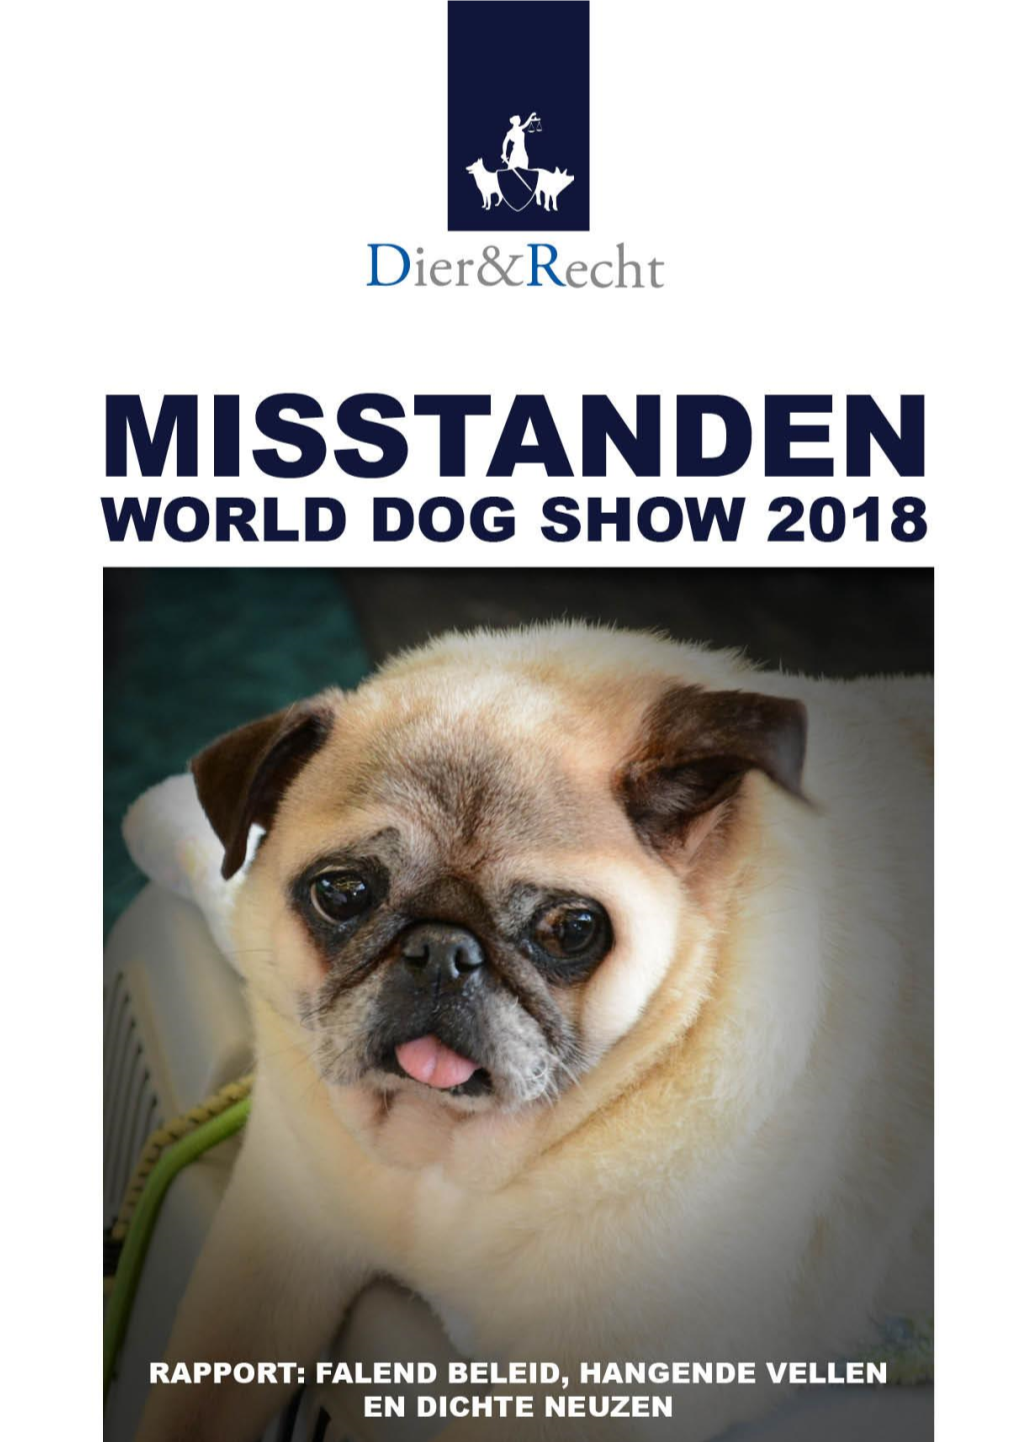 Misstanden World Dog Show 2018